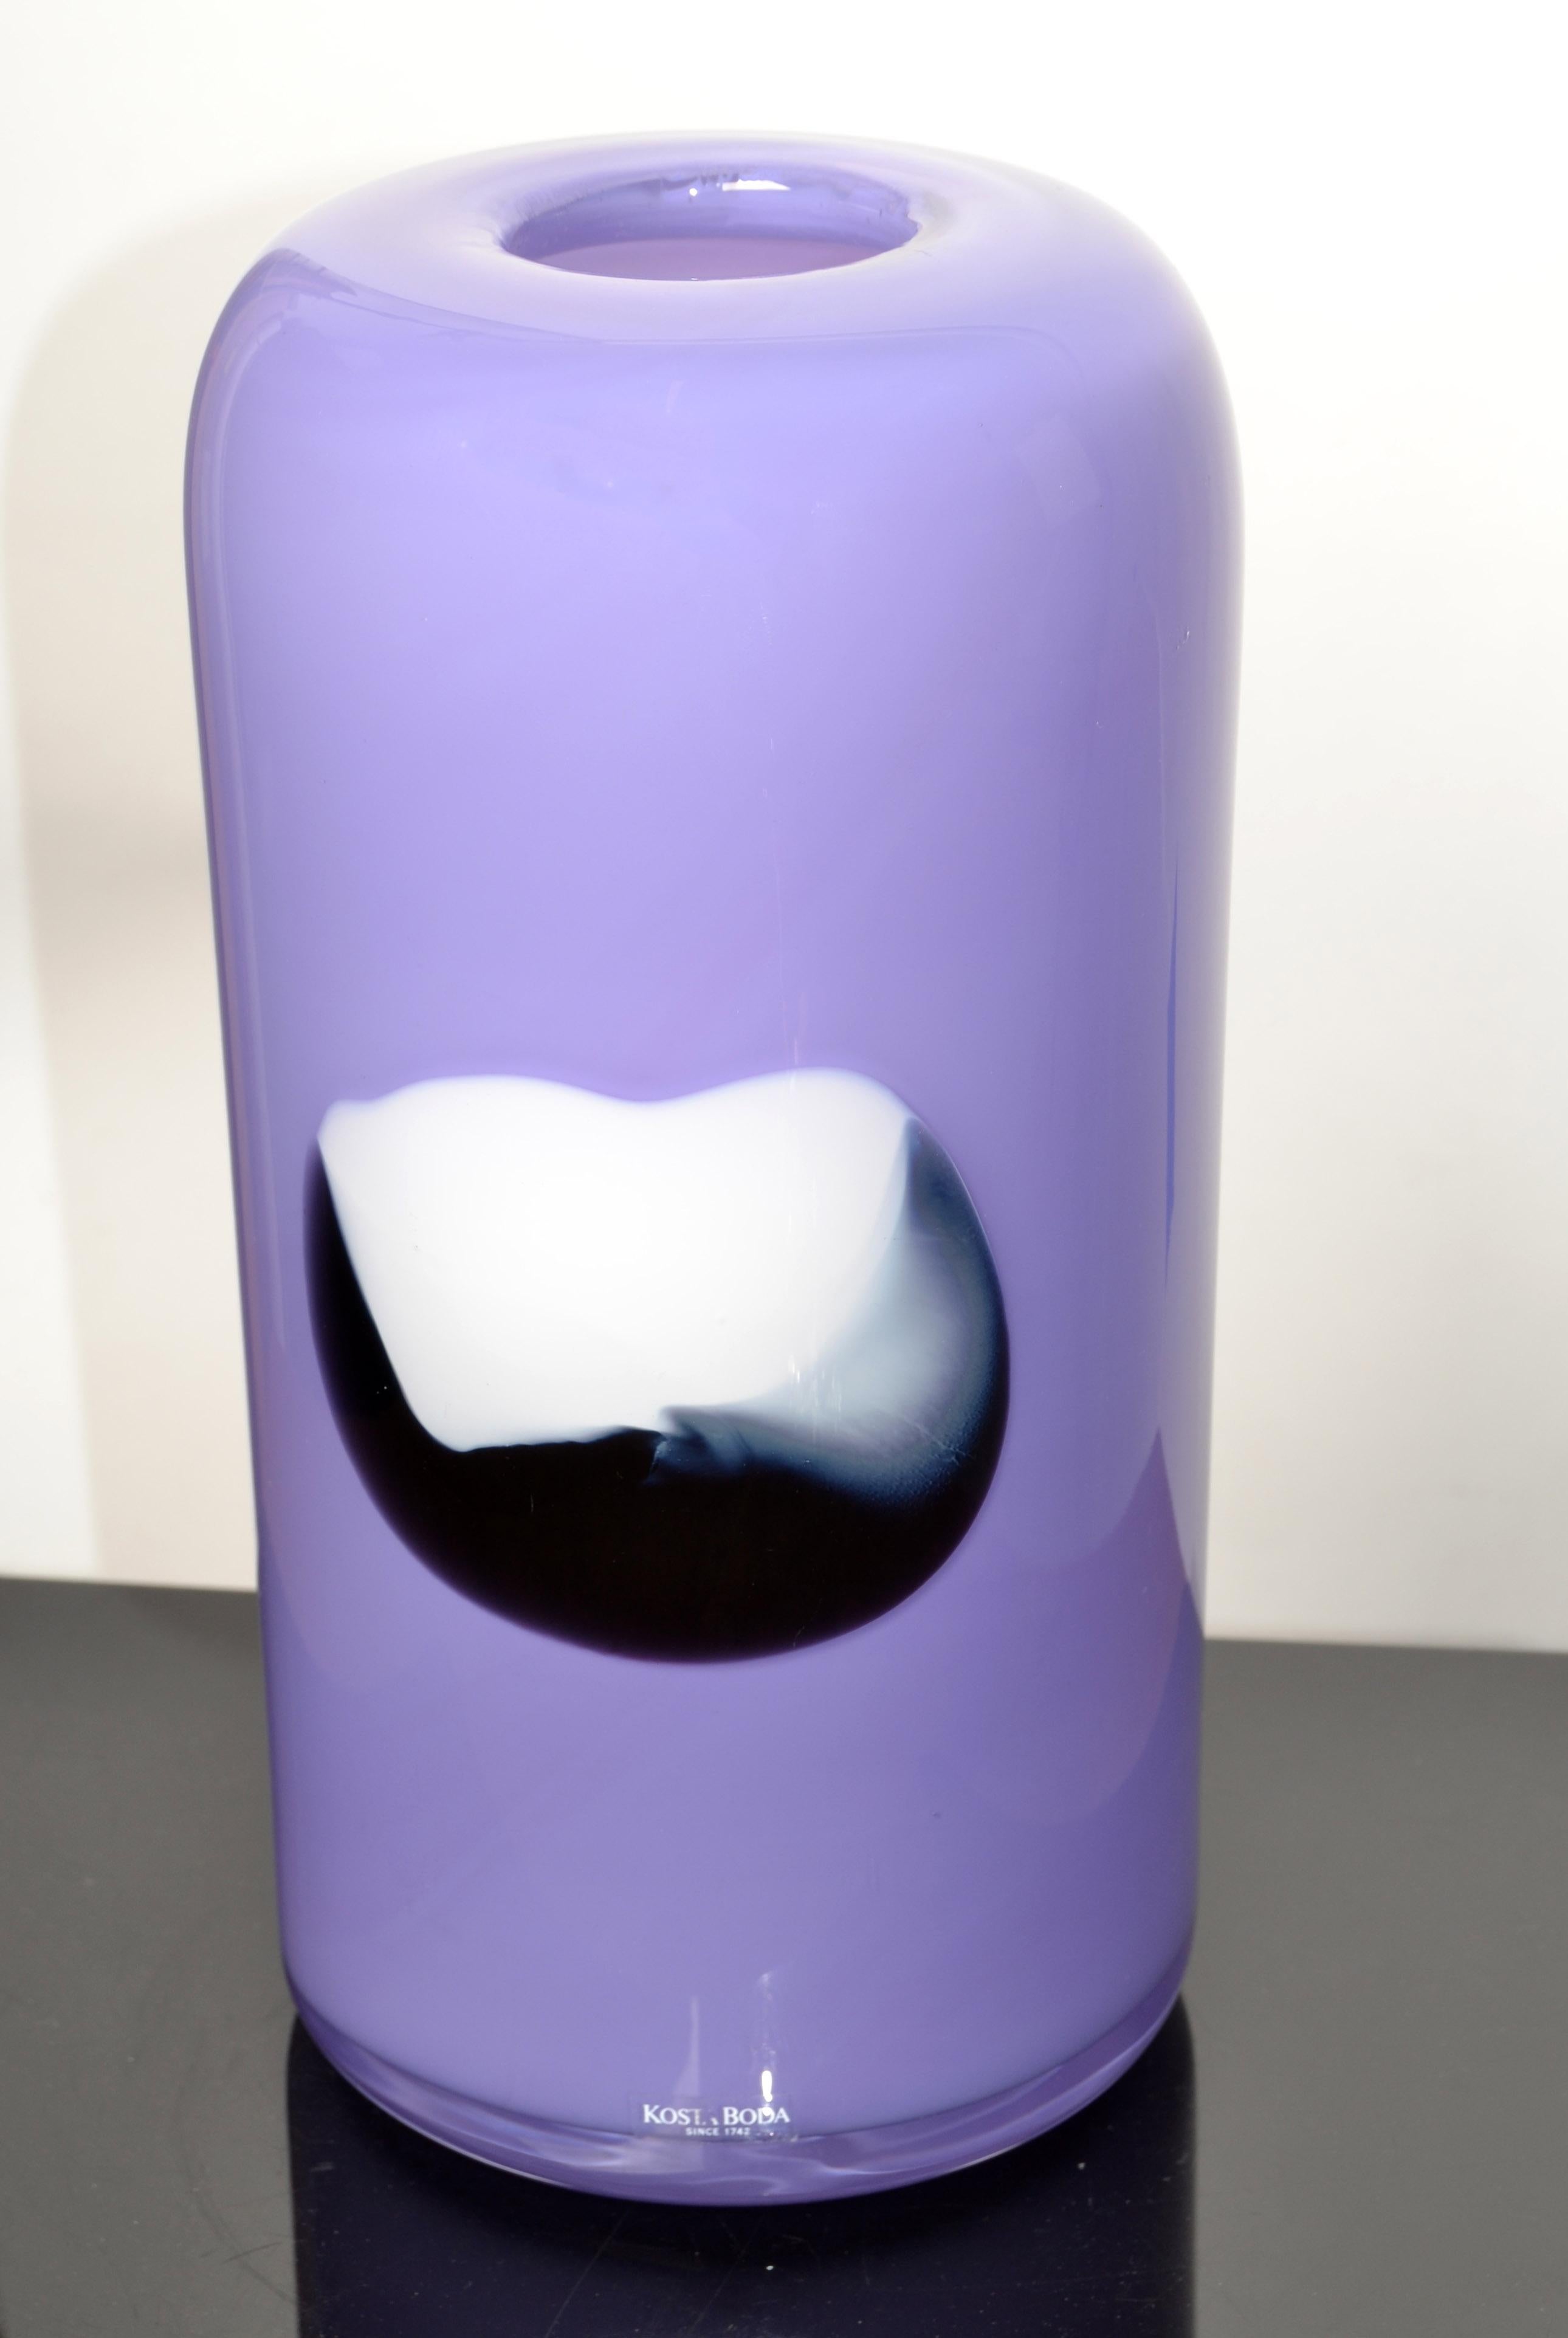 Hellviolette Zylindervase aus Kunstglas, handgefertigt von Gunnel Sahlin mit abstraktem schwarz-weißem Zentrum für Kosta Boda, Schweden.
Gunnel Sahlin war von 1986-2005 bei Kosta Boda tätig, dieses Stück ist um 1990 entstanden.
Mit einer klaren